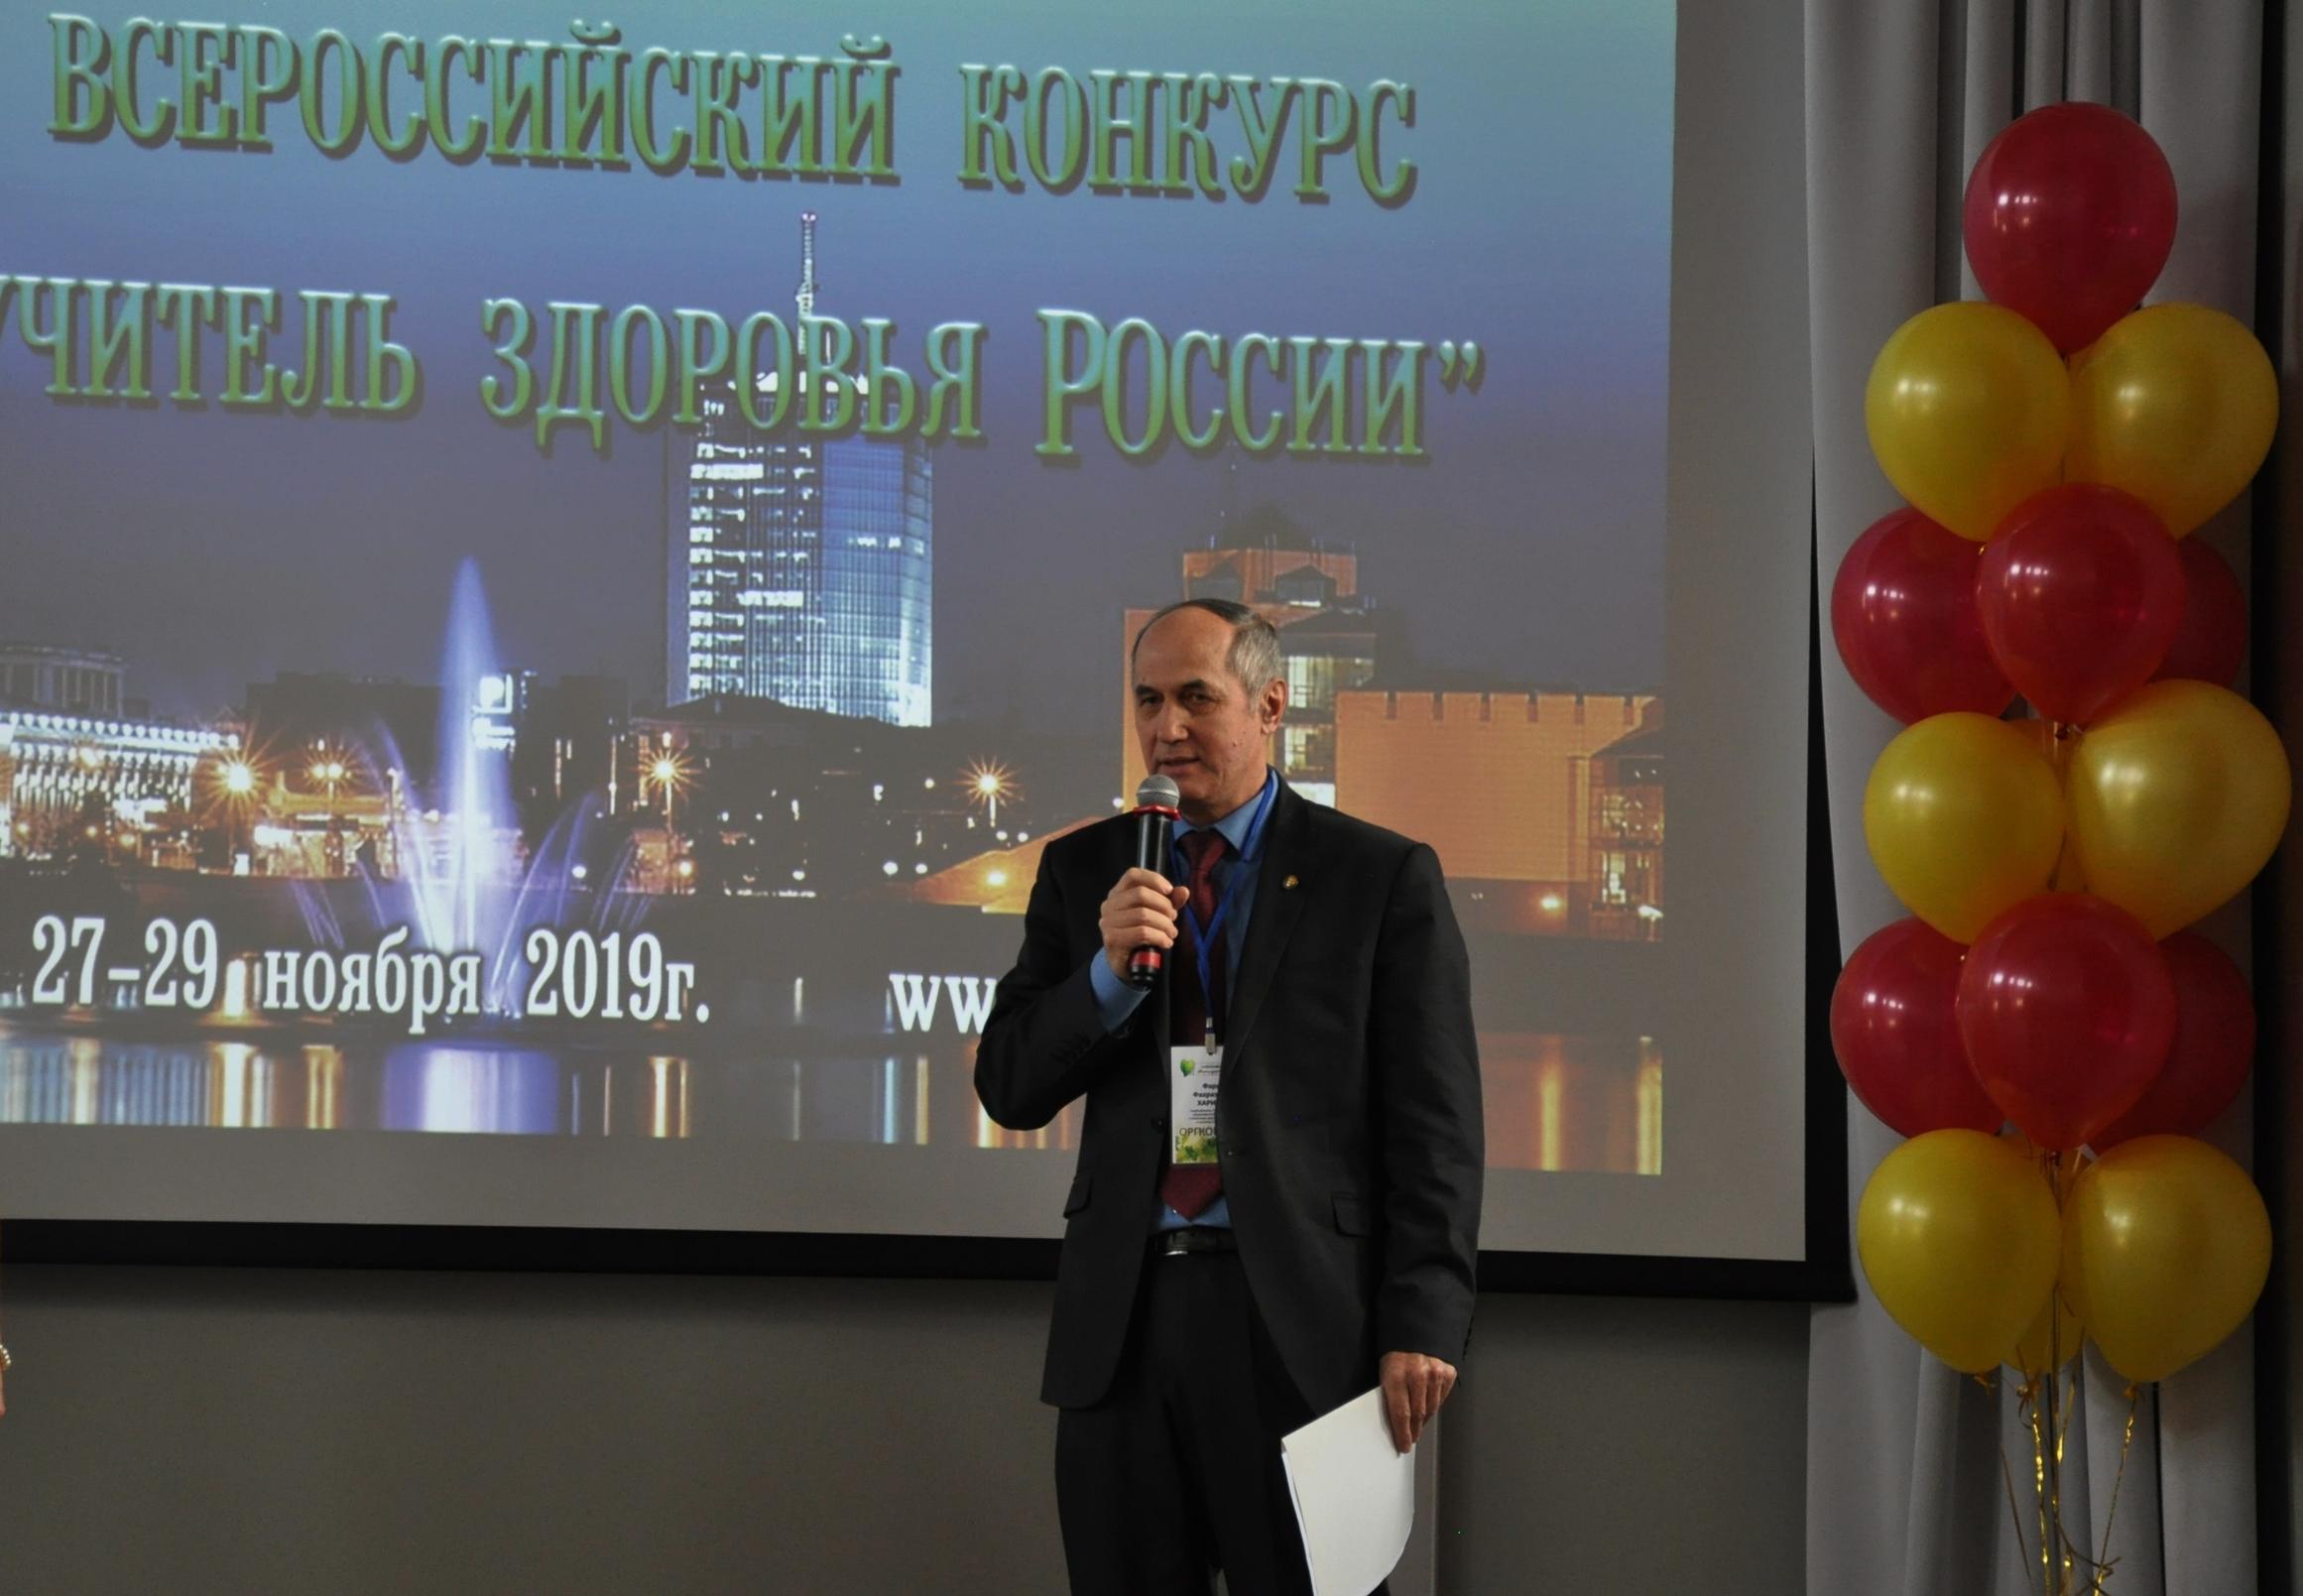 Сегодня в Челябинске определят лучшего учителя здоровья России